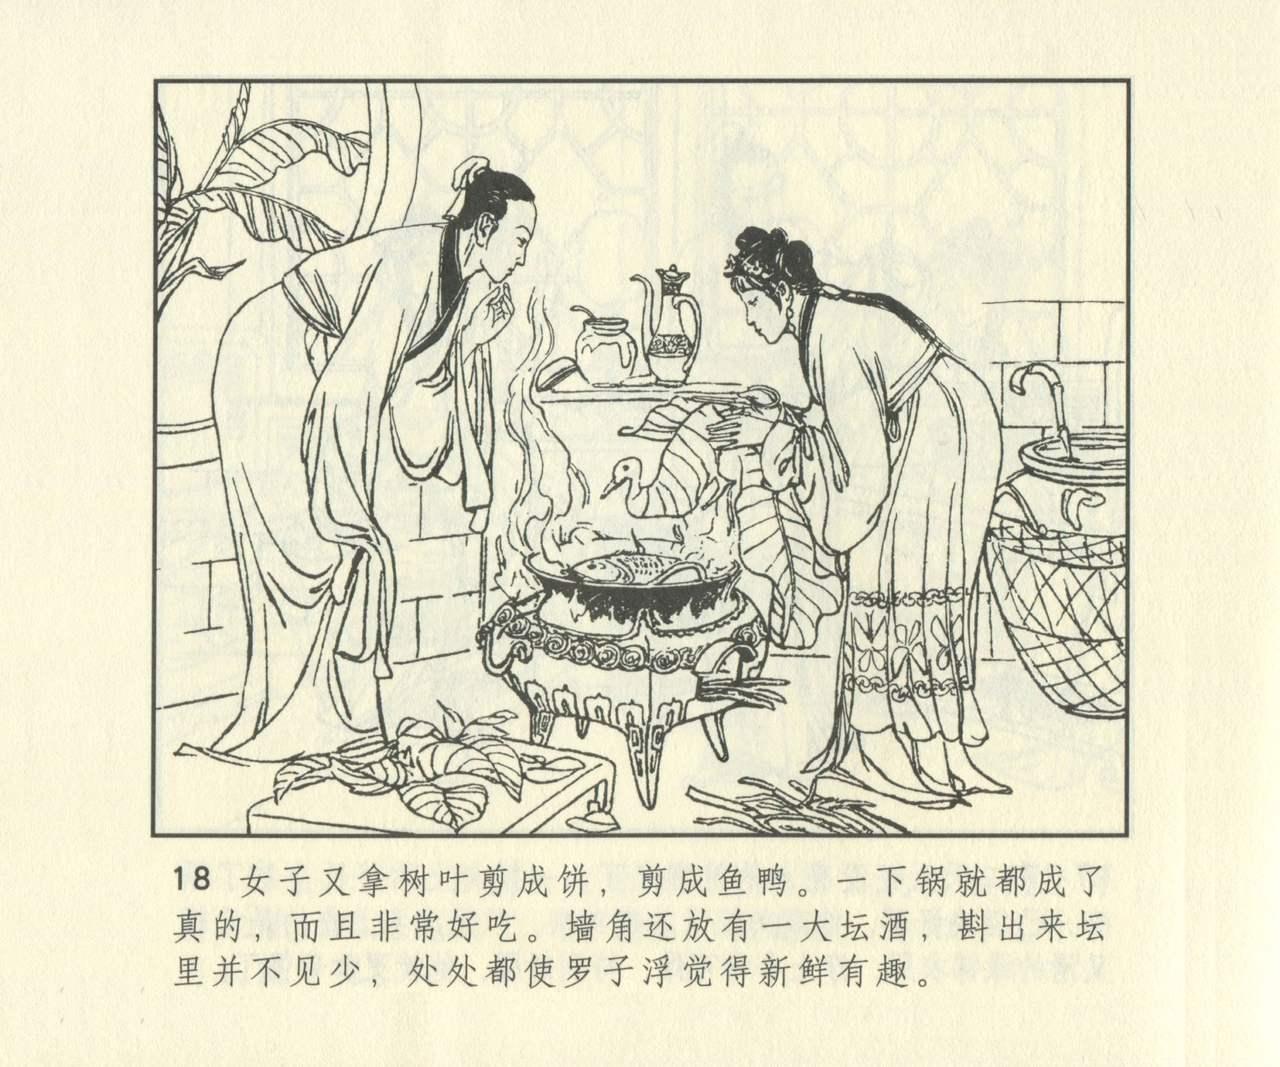 聊斋志异 张玮等绘 天津人民美术出版社 卷二十一 ~ 三十 634